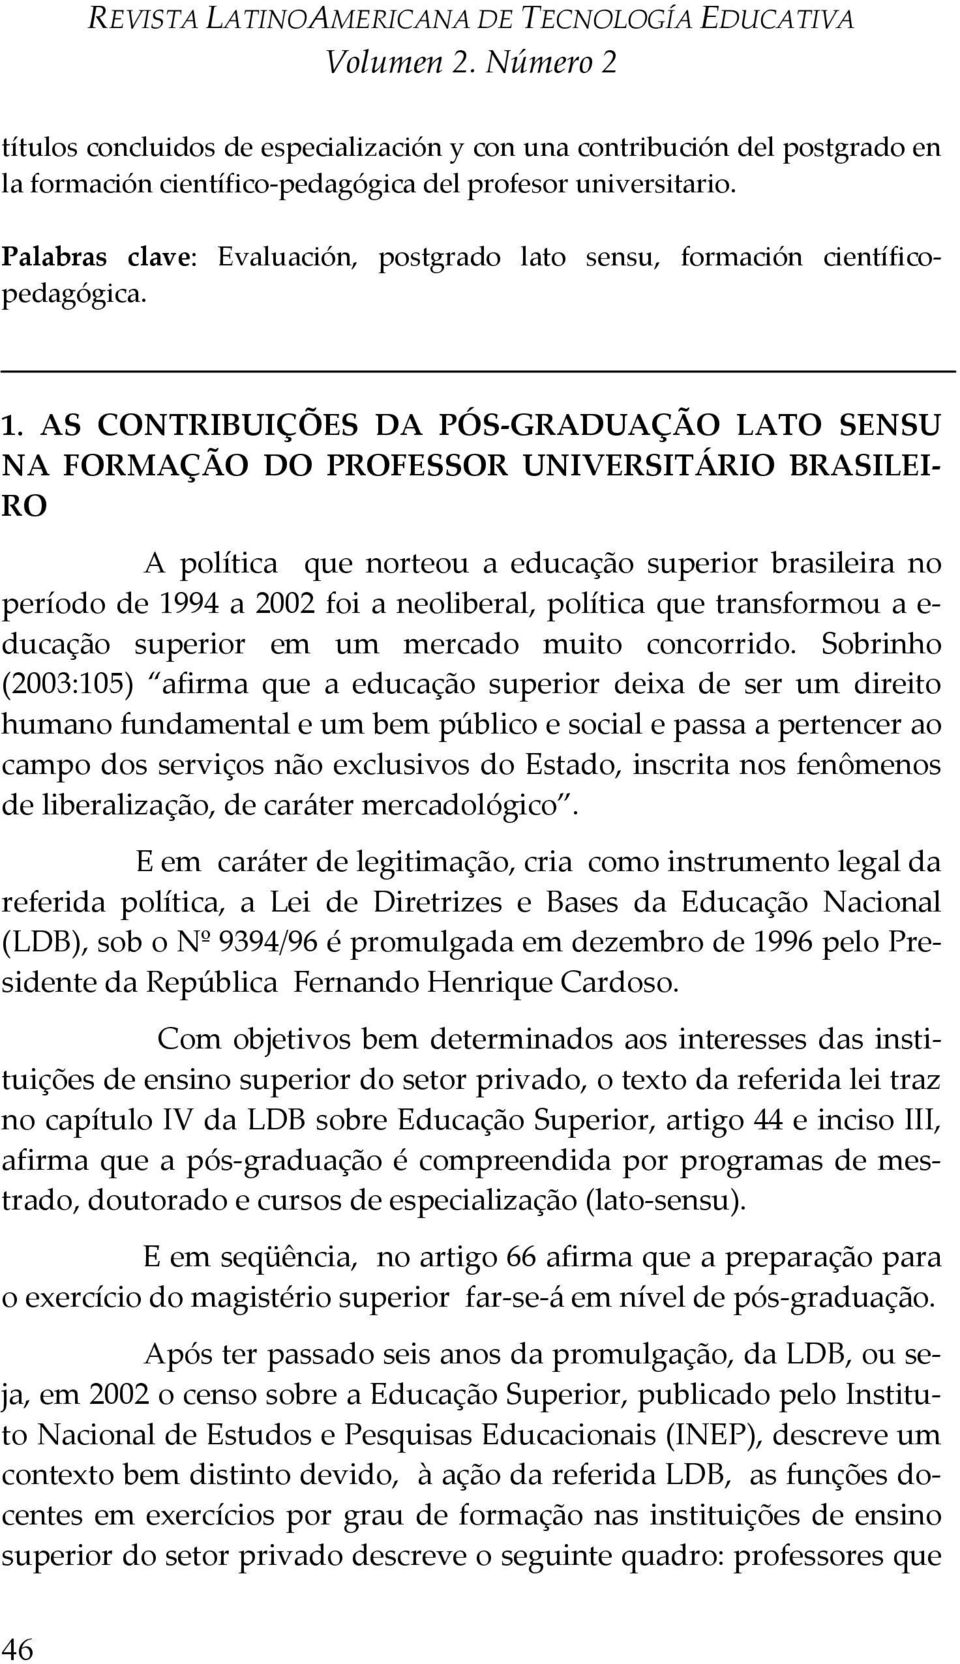 AS CONTRIBUIÇÕES DA PÓS-GRADUAÇÃO LATO SENSU NA FORMAÇÃO DO PROFESSOR UNIVERSITÁRIO BRASILEI- RO A política que norteou a educação superior brasileira no período de 1994 a 2002 foi a neoliberal,